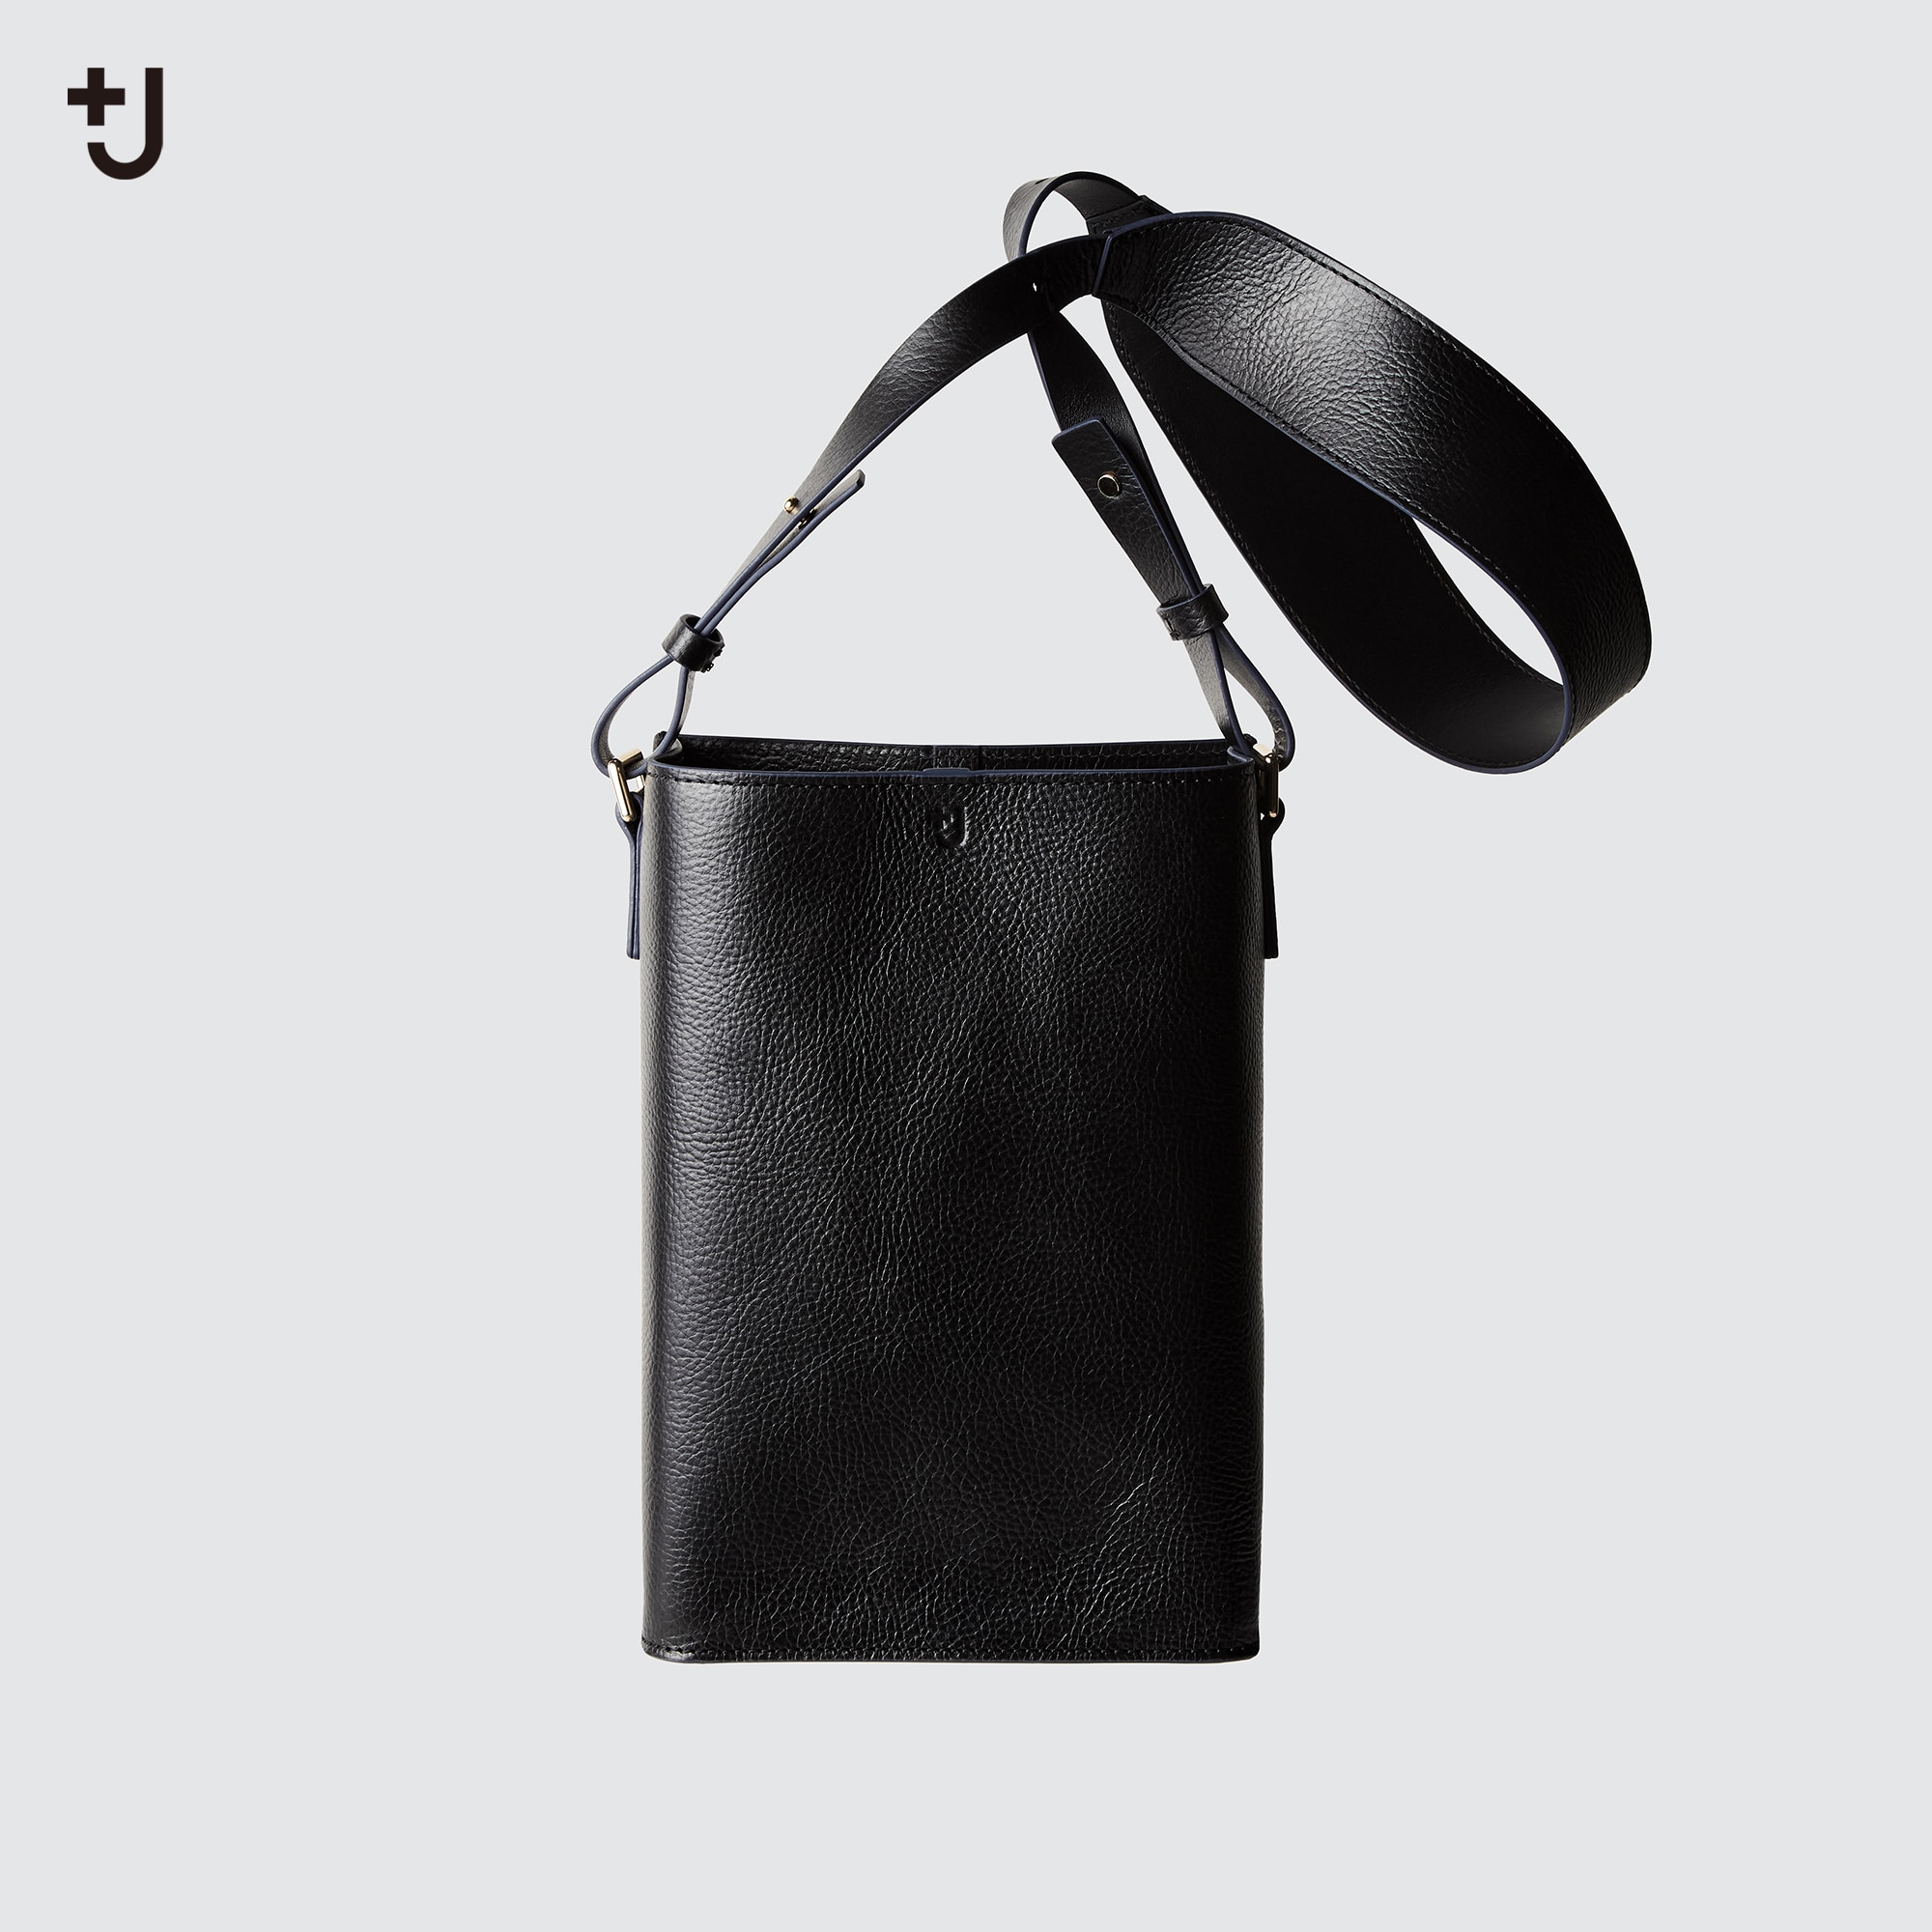 Jil Sander - Women's Medium Crinkled Shoulder Bag - Black - Leather